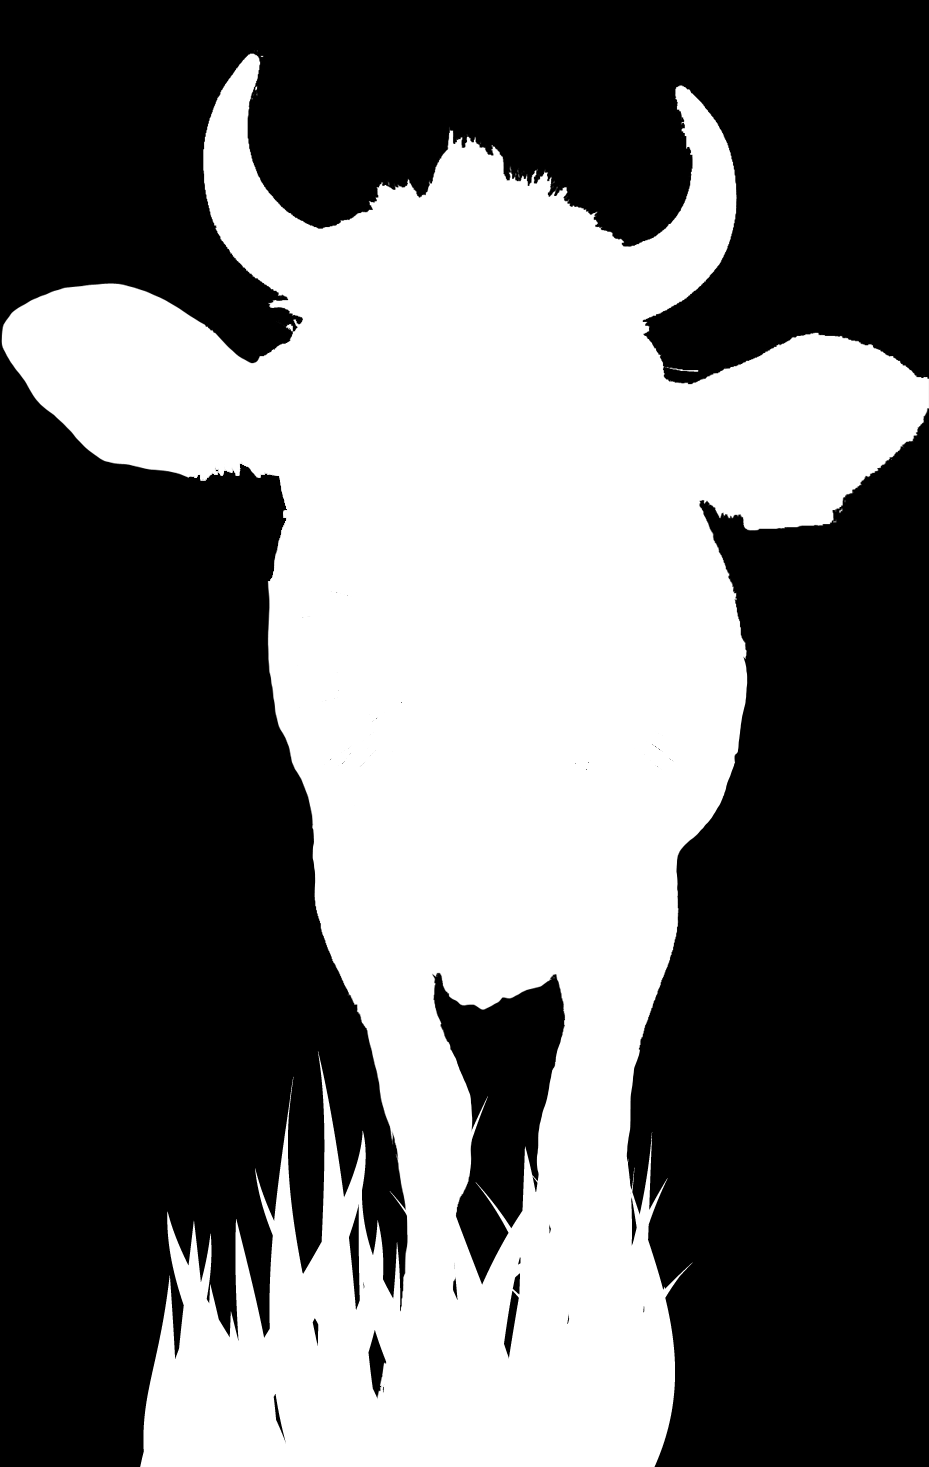 Namen: OPDRACHTKAART 6 Gezondheid LES 2: Onderzoek op de melkveehouderij Kies 1 koe. Bekijk deze koe 2 minuten. Eén kind telt steeds hardop tot 10, heel langzaam.